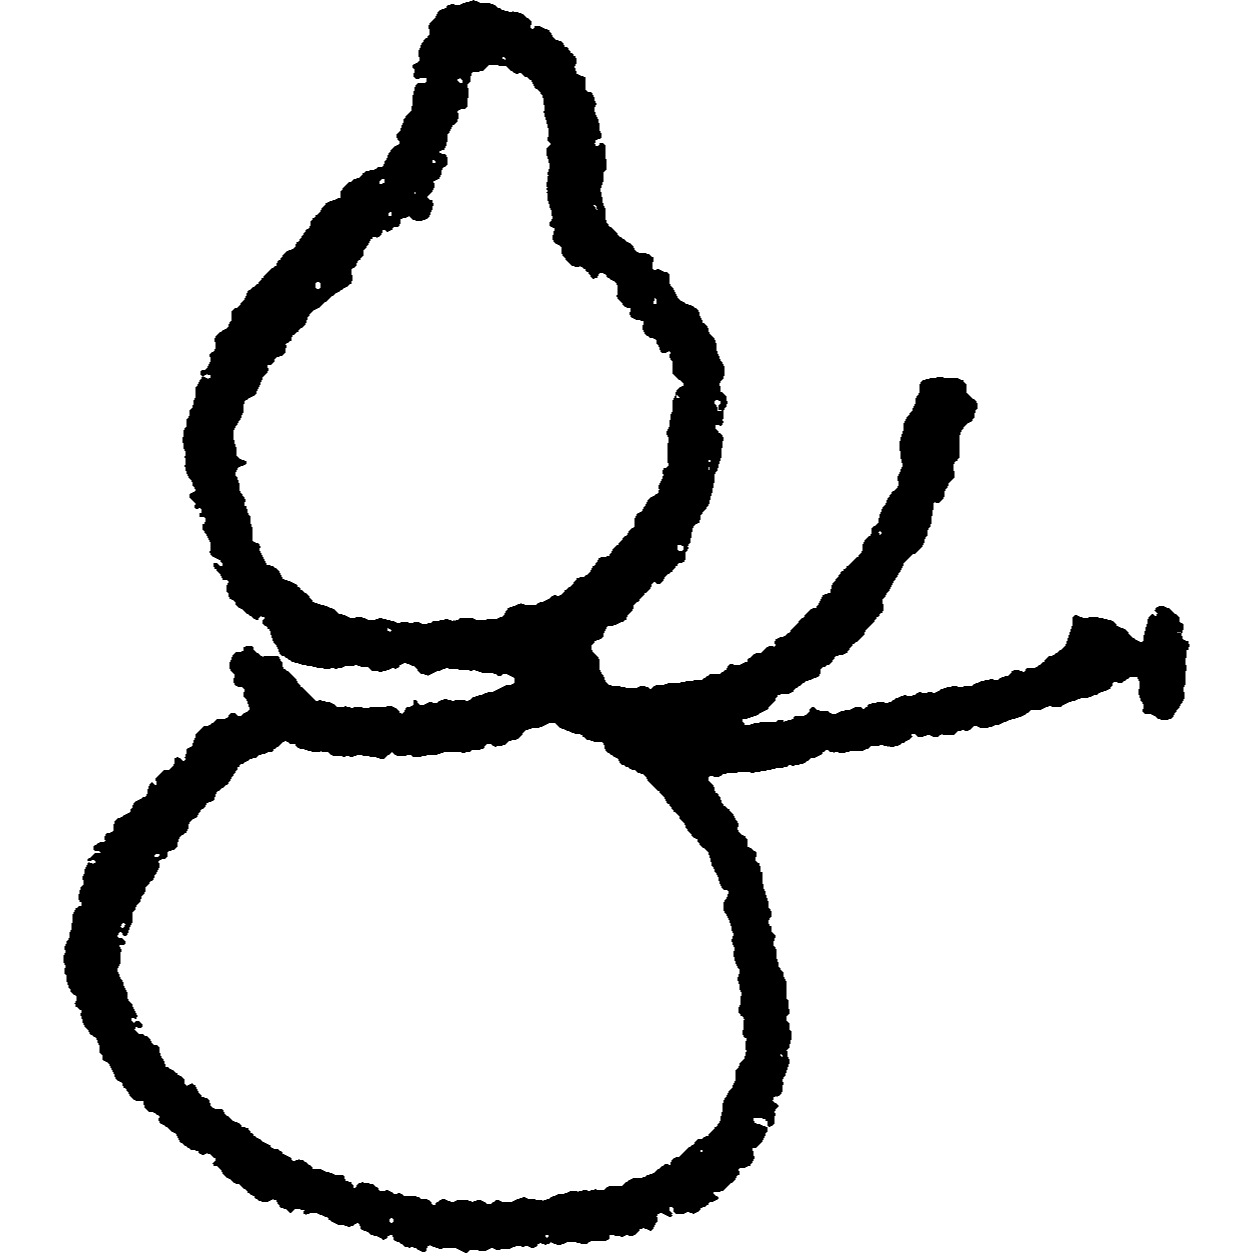 ひょうたん（瓢箪）のイラスト / Gourd Illustration